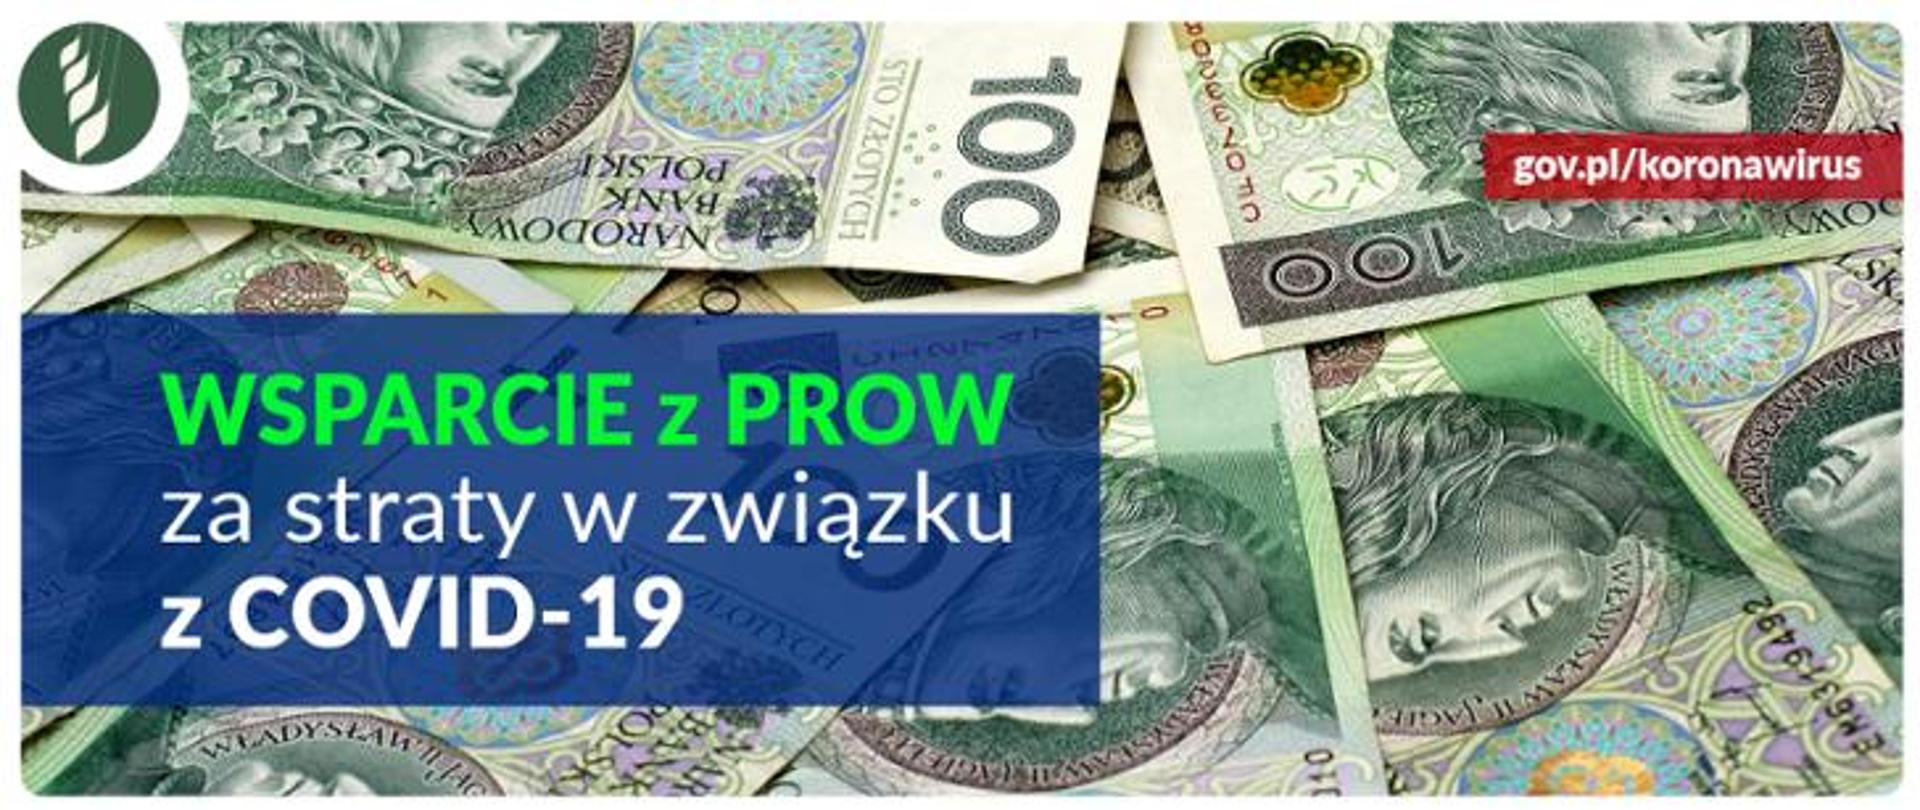 Banknoty 100 zł. Napis na niebieskim tle Wsparcie z PROW za straty w związku z COVID-19.